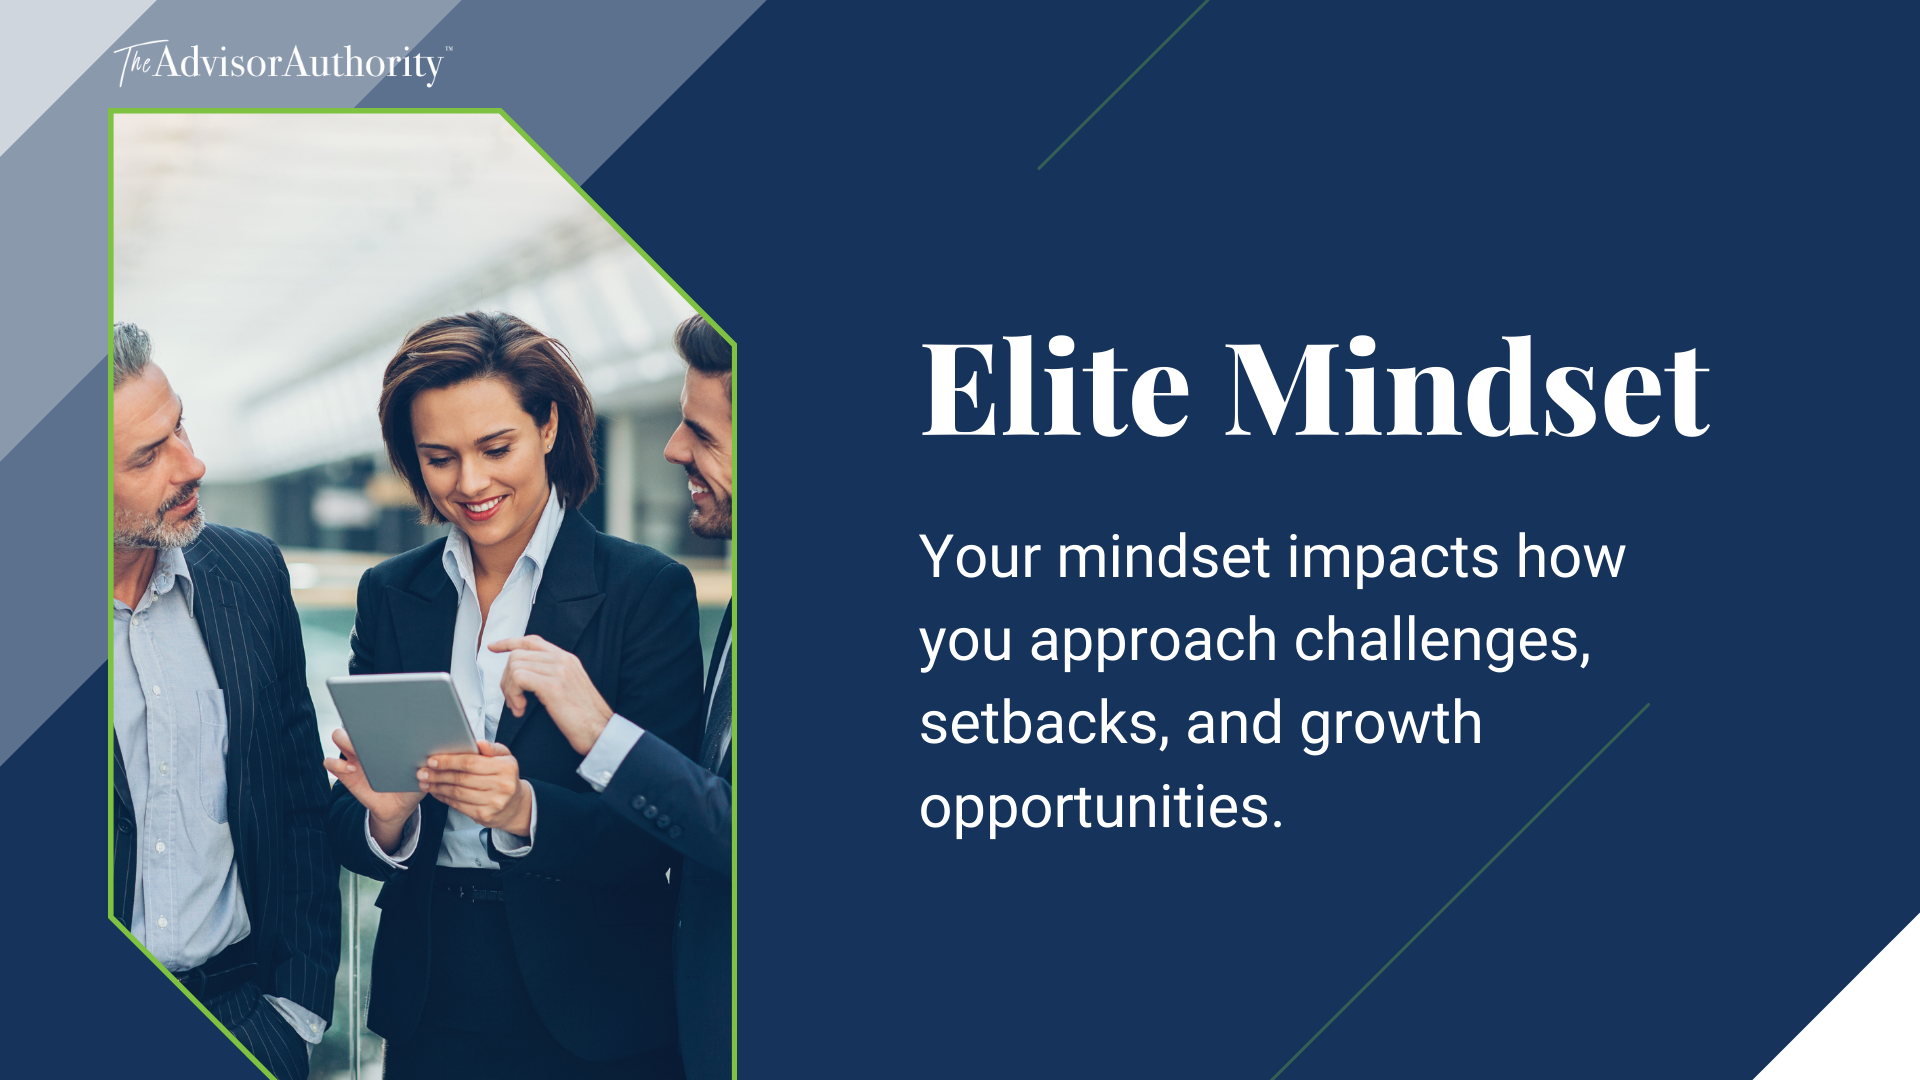 Having an Elite Mindset | Financial Advisor Training | The Advisor Authority